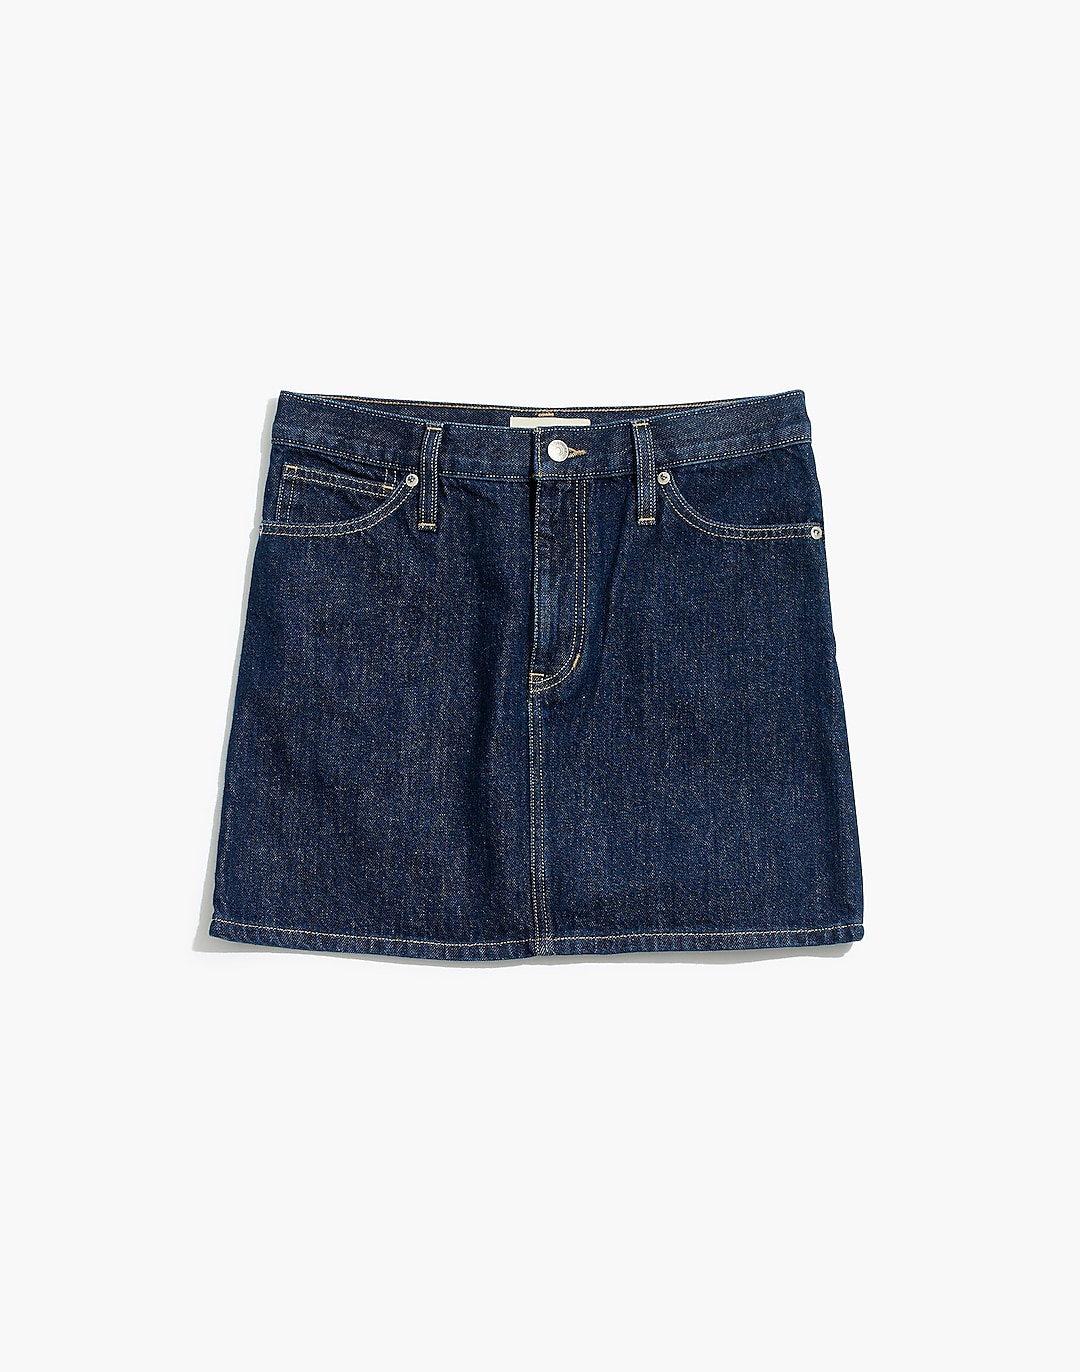 Rigid Denim Mini Skirt in Dupree Wash | Madewell